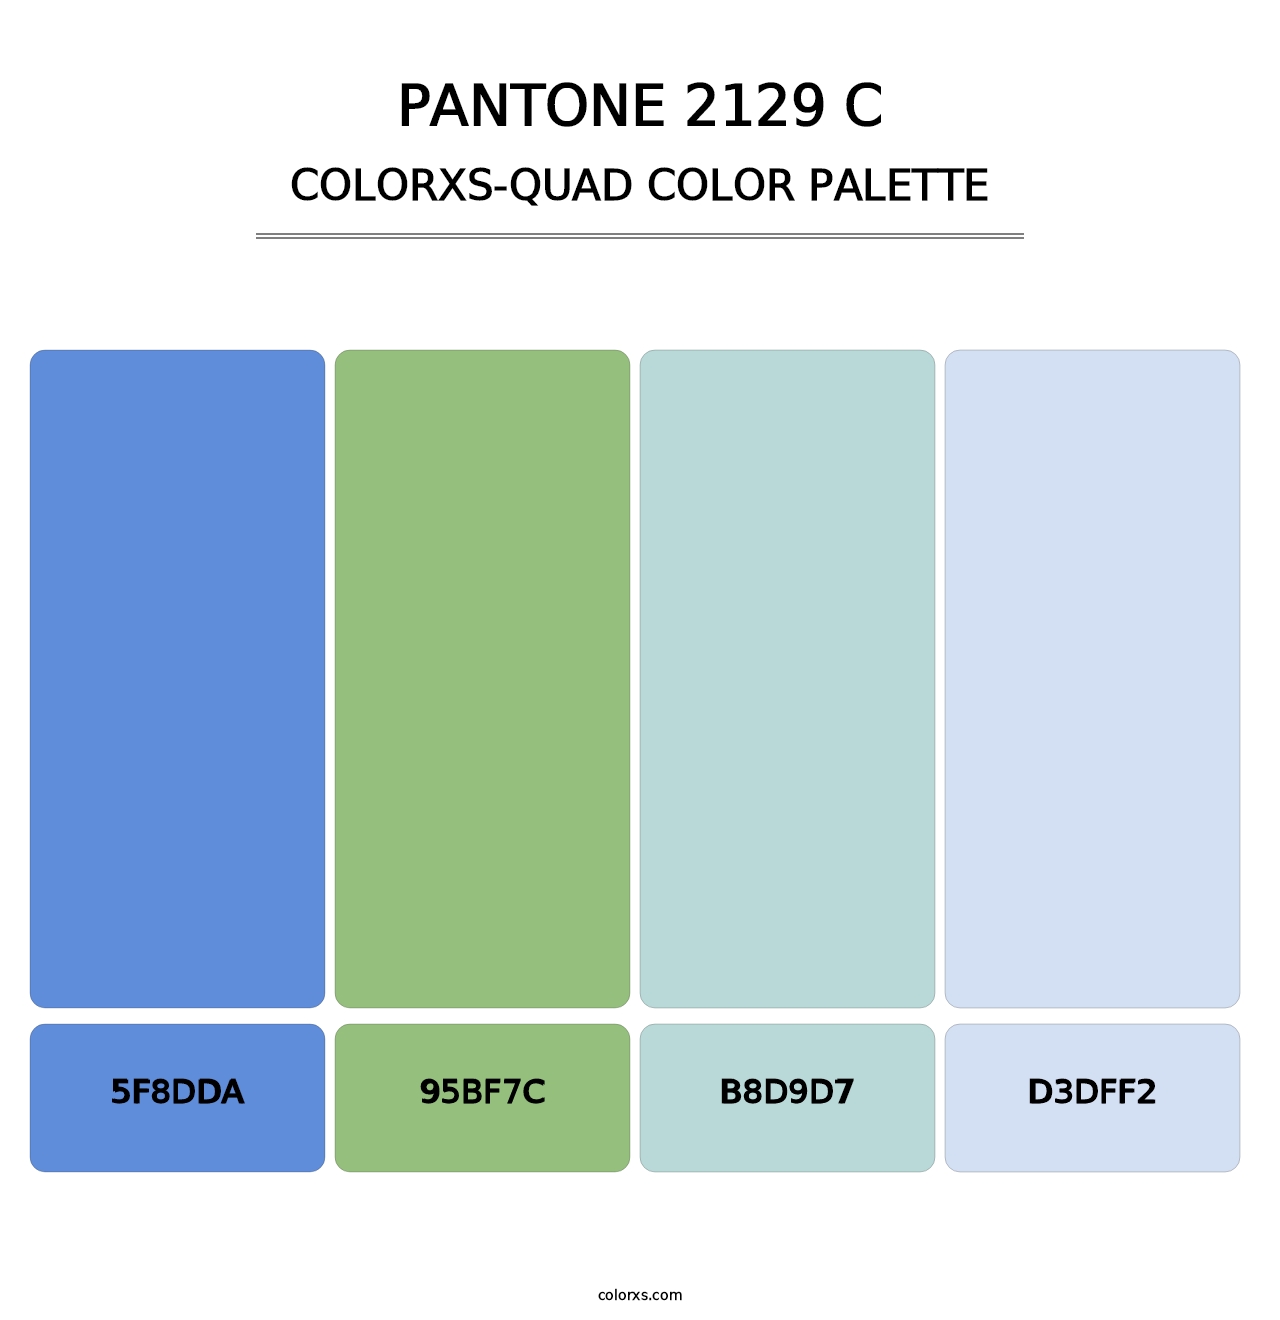 PANTONE 2129 C - Colorxs Quad Palette